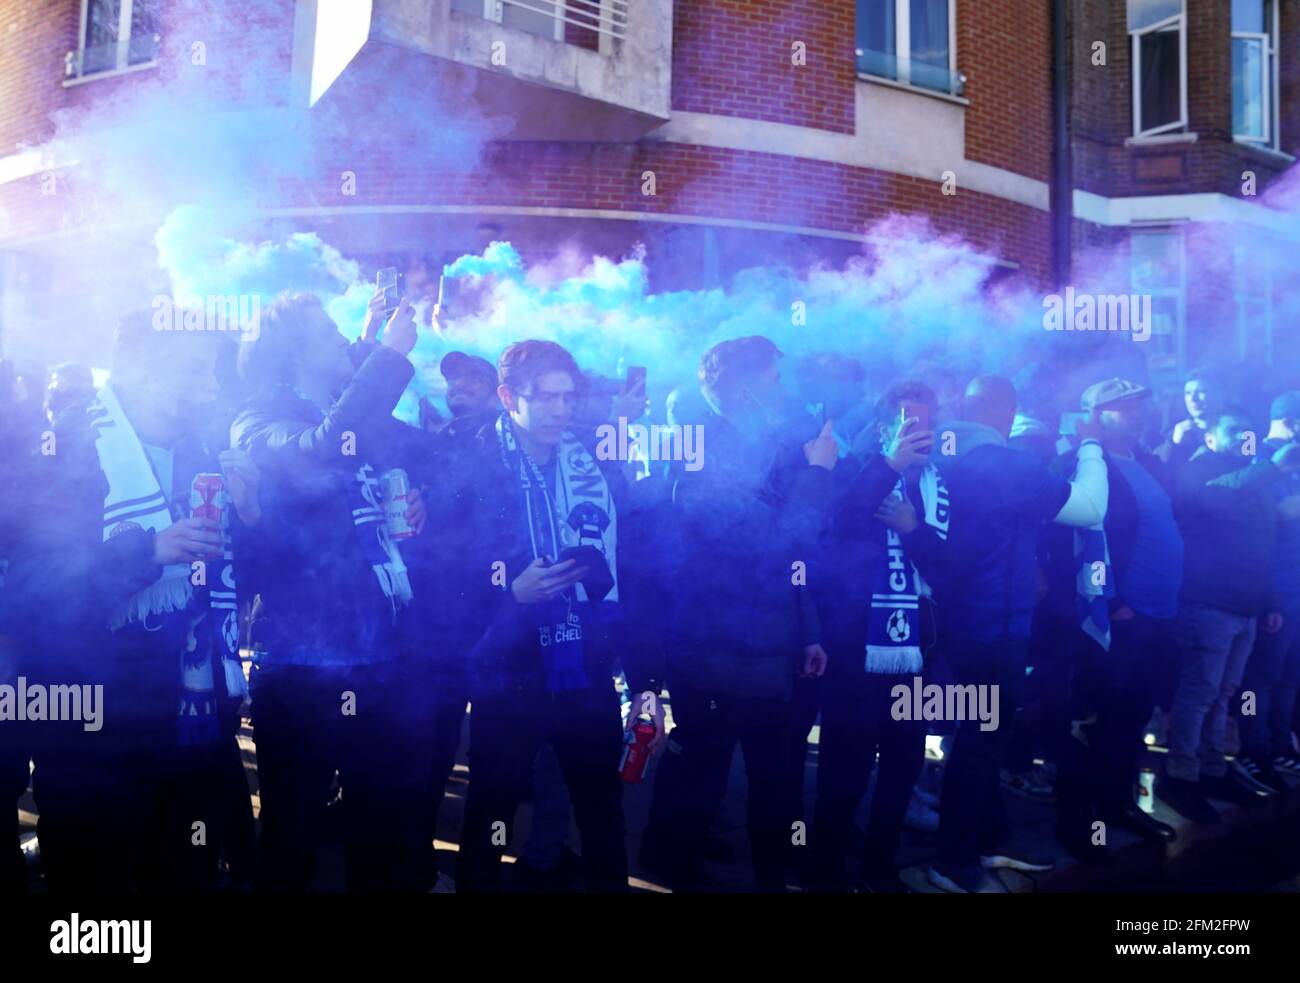 Les fans de Chelsea protestent contre la propriété du club devant le stade avant le deuxième match de la demi-finale de la Ligue des champions de l'UEFA à Stamford Bridge, Londres. Date de la photo: Mercredi 5 mai 2021. Banque D'Images